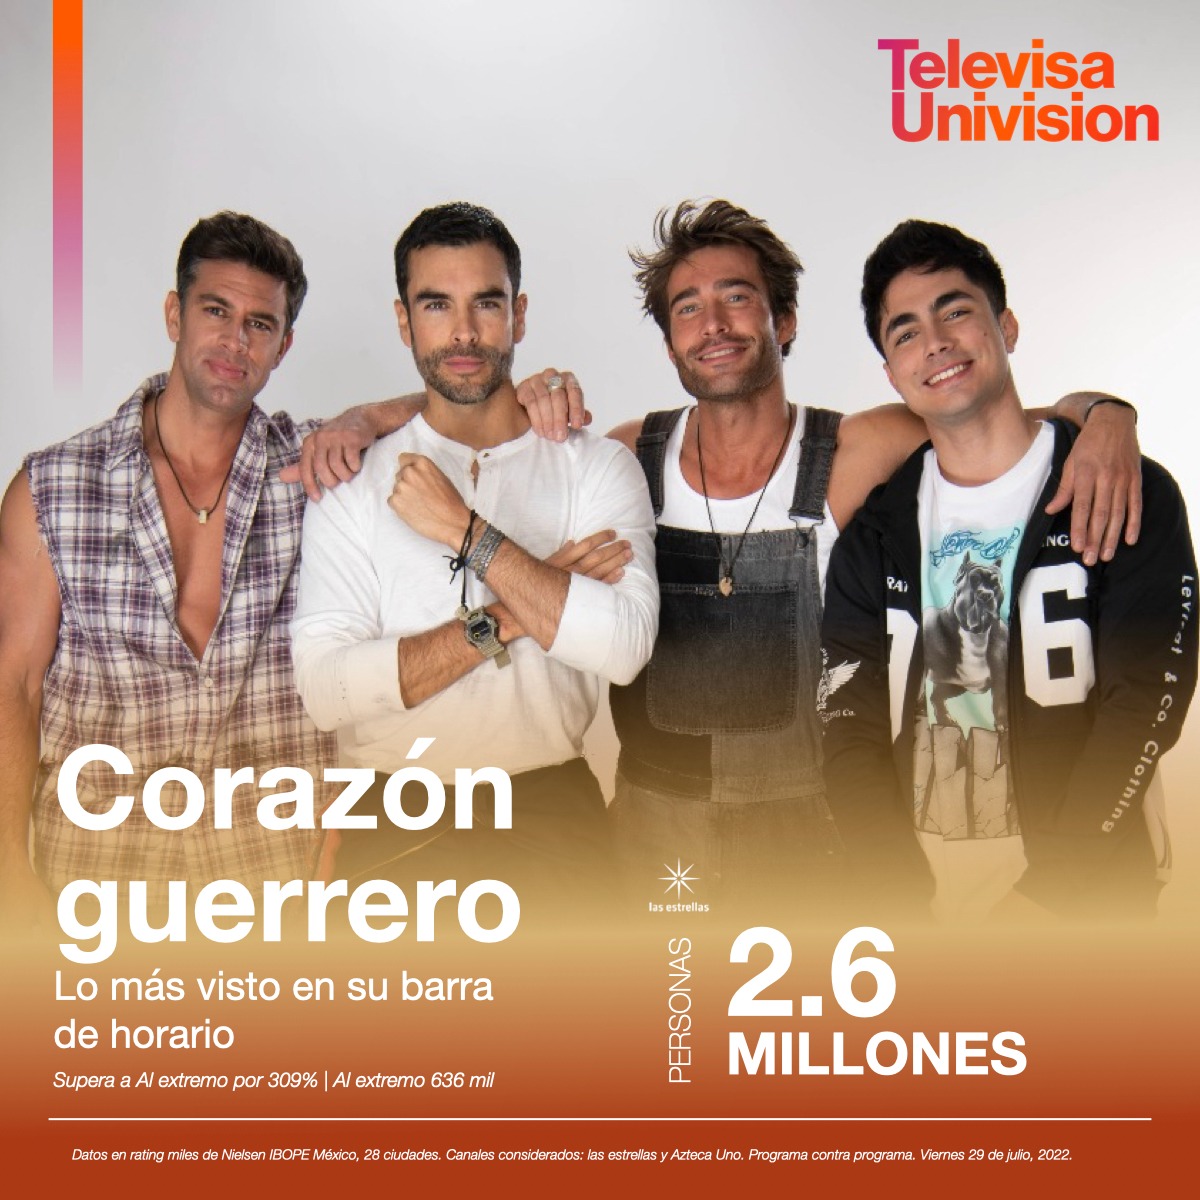 ¡Corazón Guerrero es la favorita de su horario! 2.6 millones de personas no se pierden ni un episodio. 📺👀 #TUPrensa #Ratings